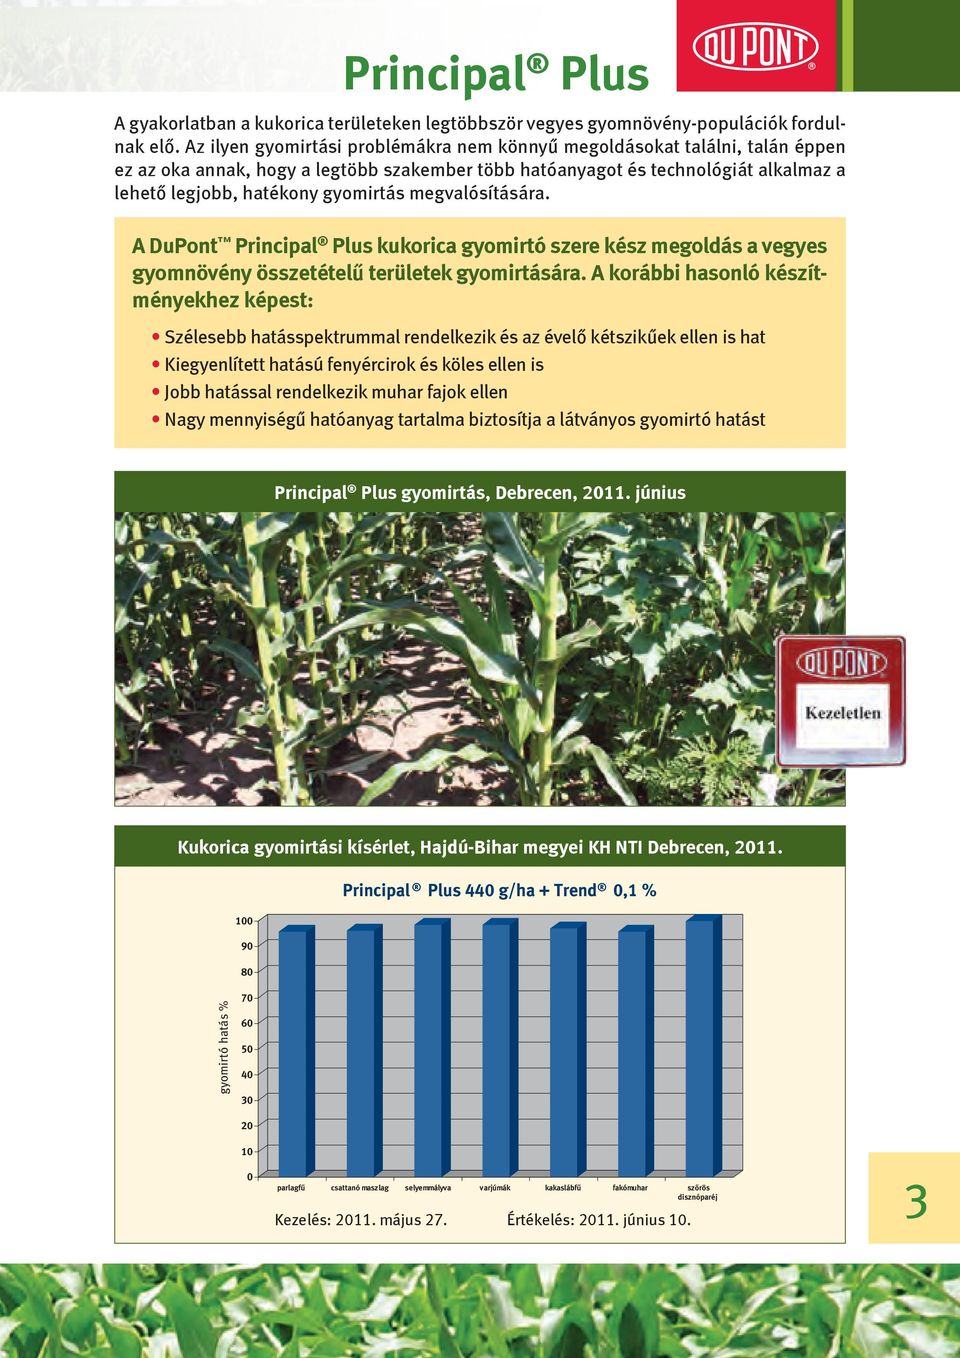 megvalósítására. A DuPont Principal Plus kukorica gyomirtó szere kész megoldás a vegyes gyomnövény összetételű területek gyomirtására.